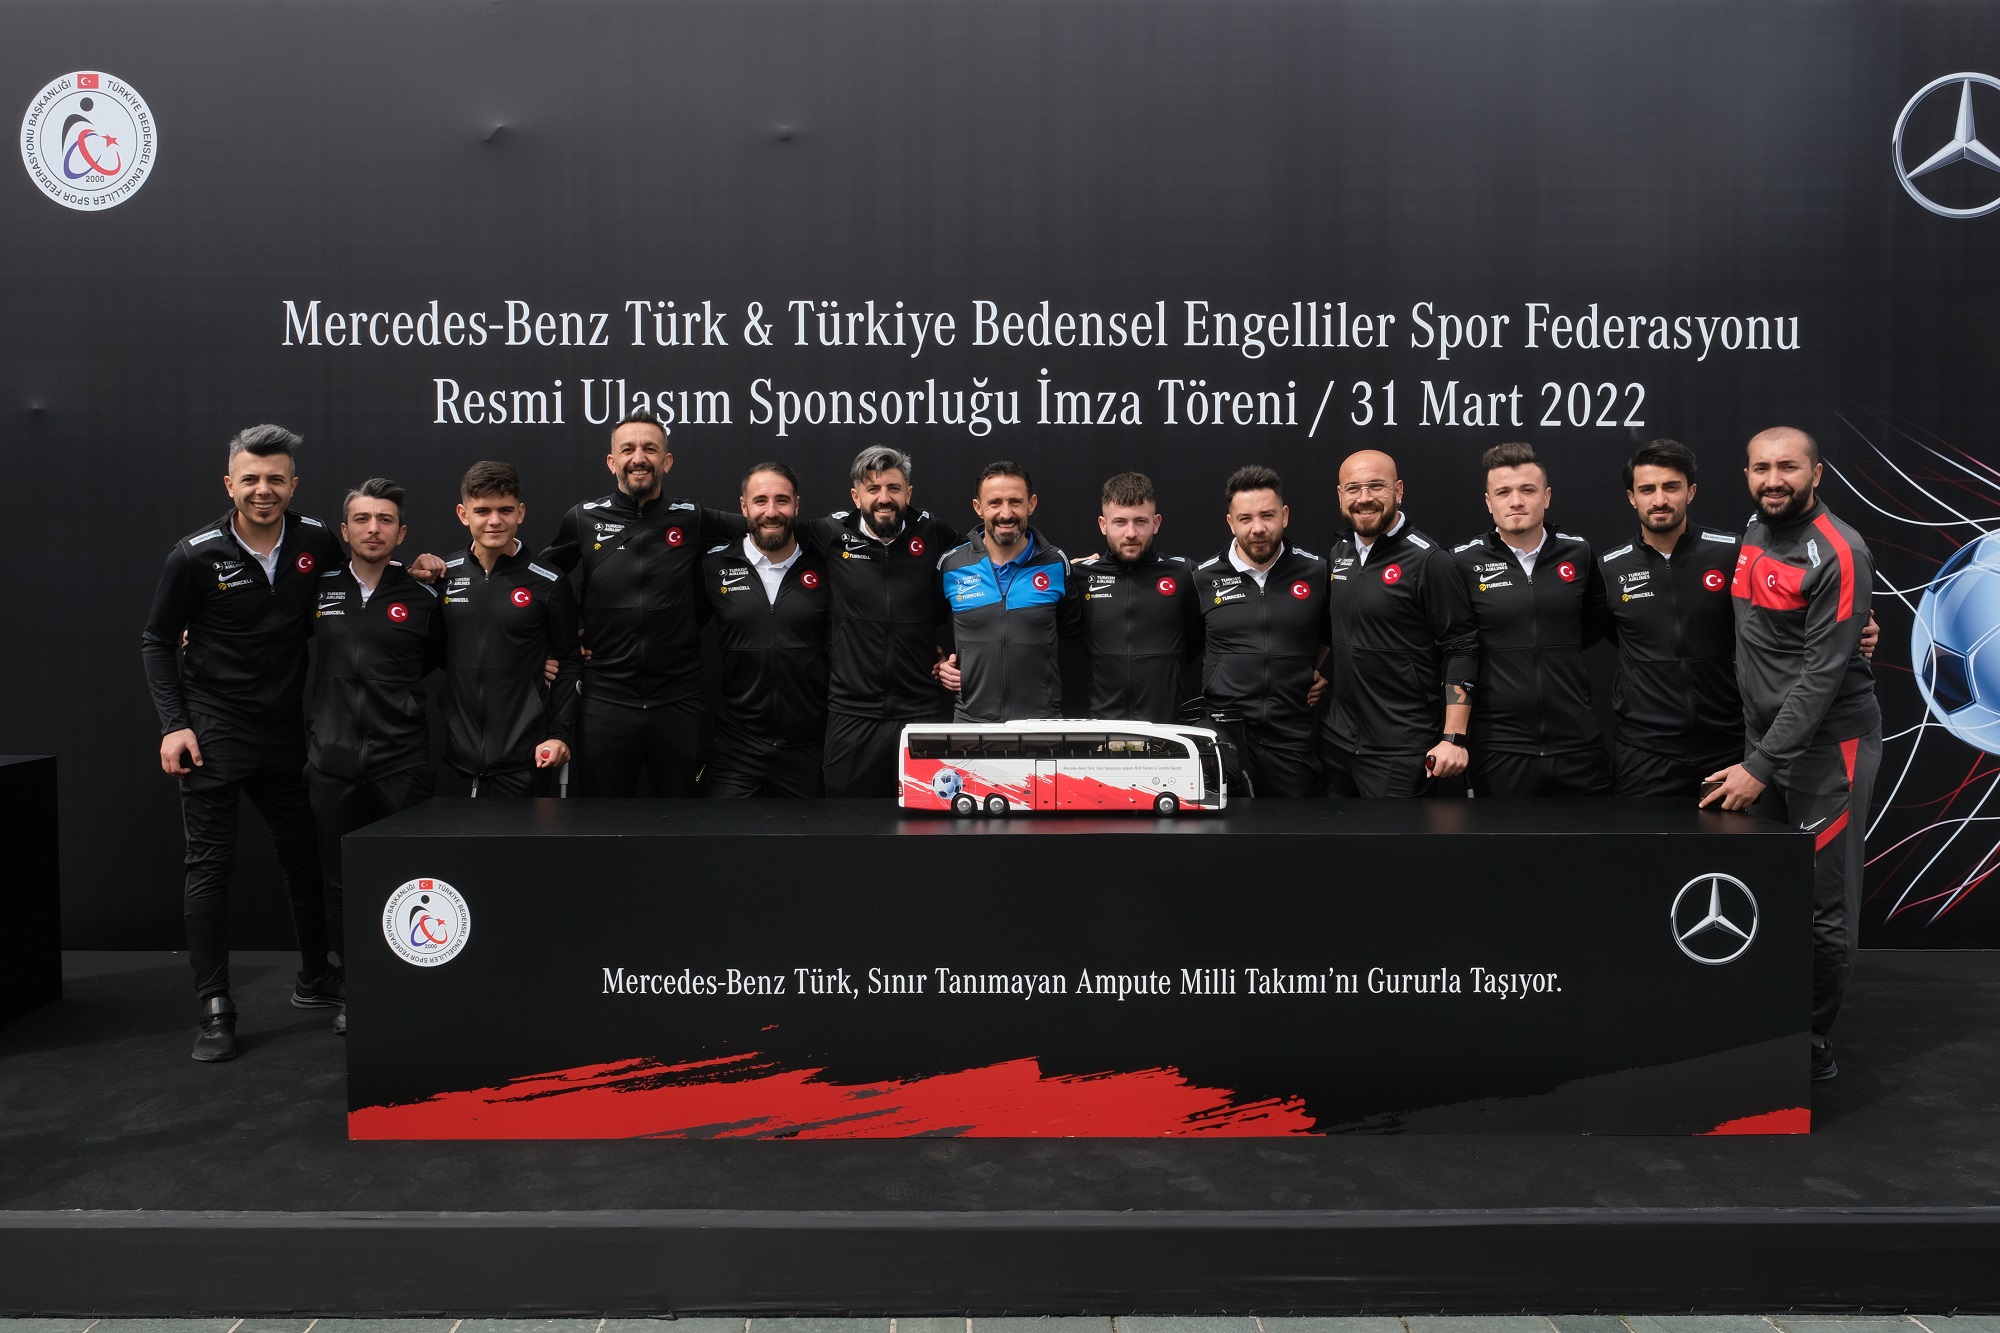 Mercedes-Benz Türk, Ampute Futbol Milli Takımı’nın sponsoru oldu